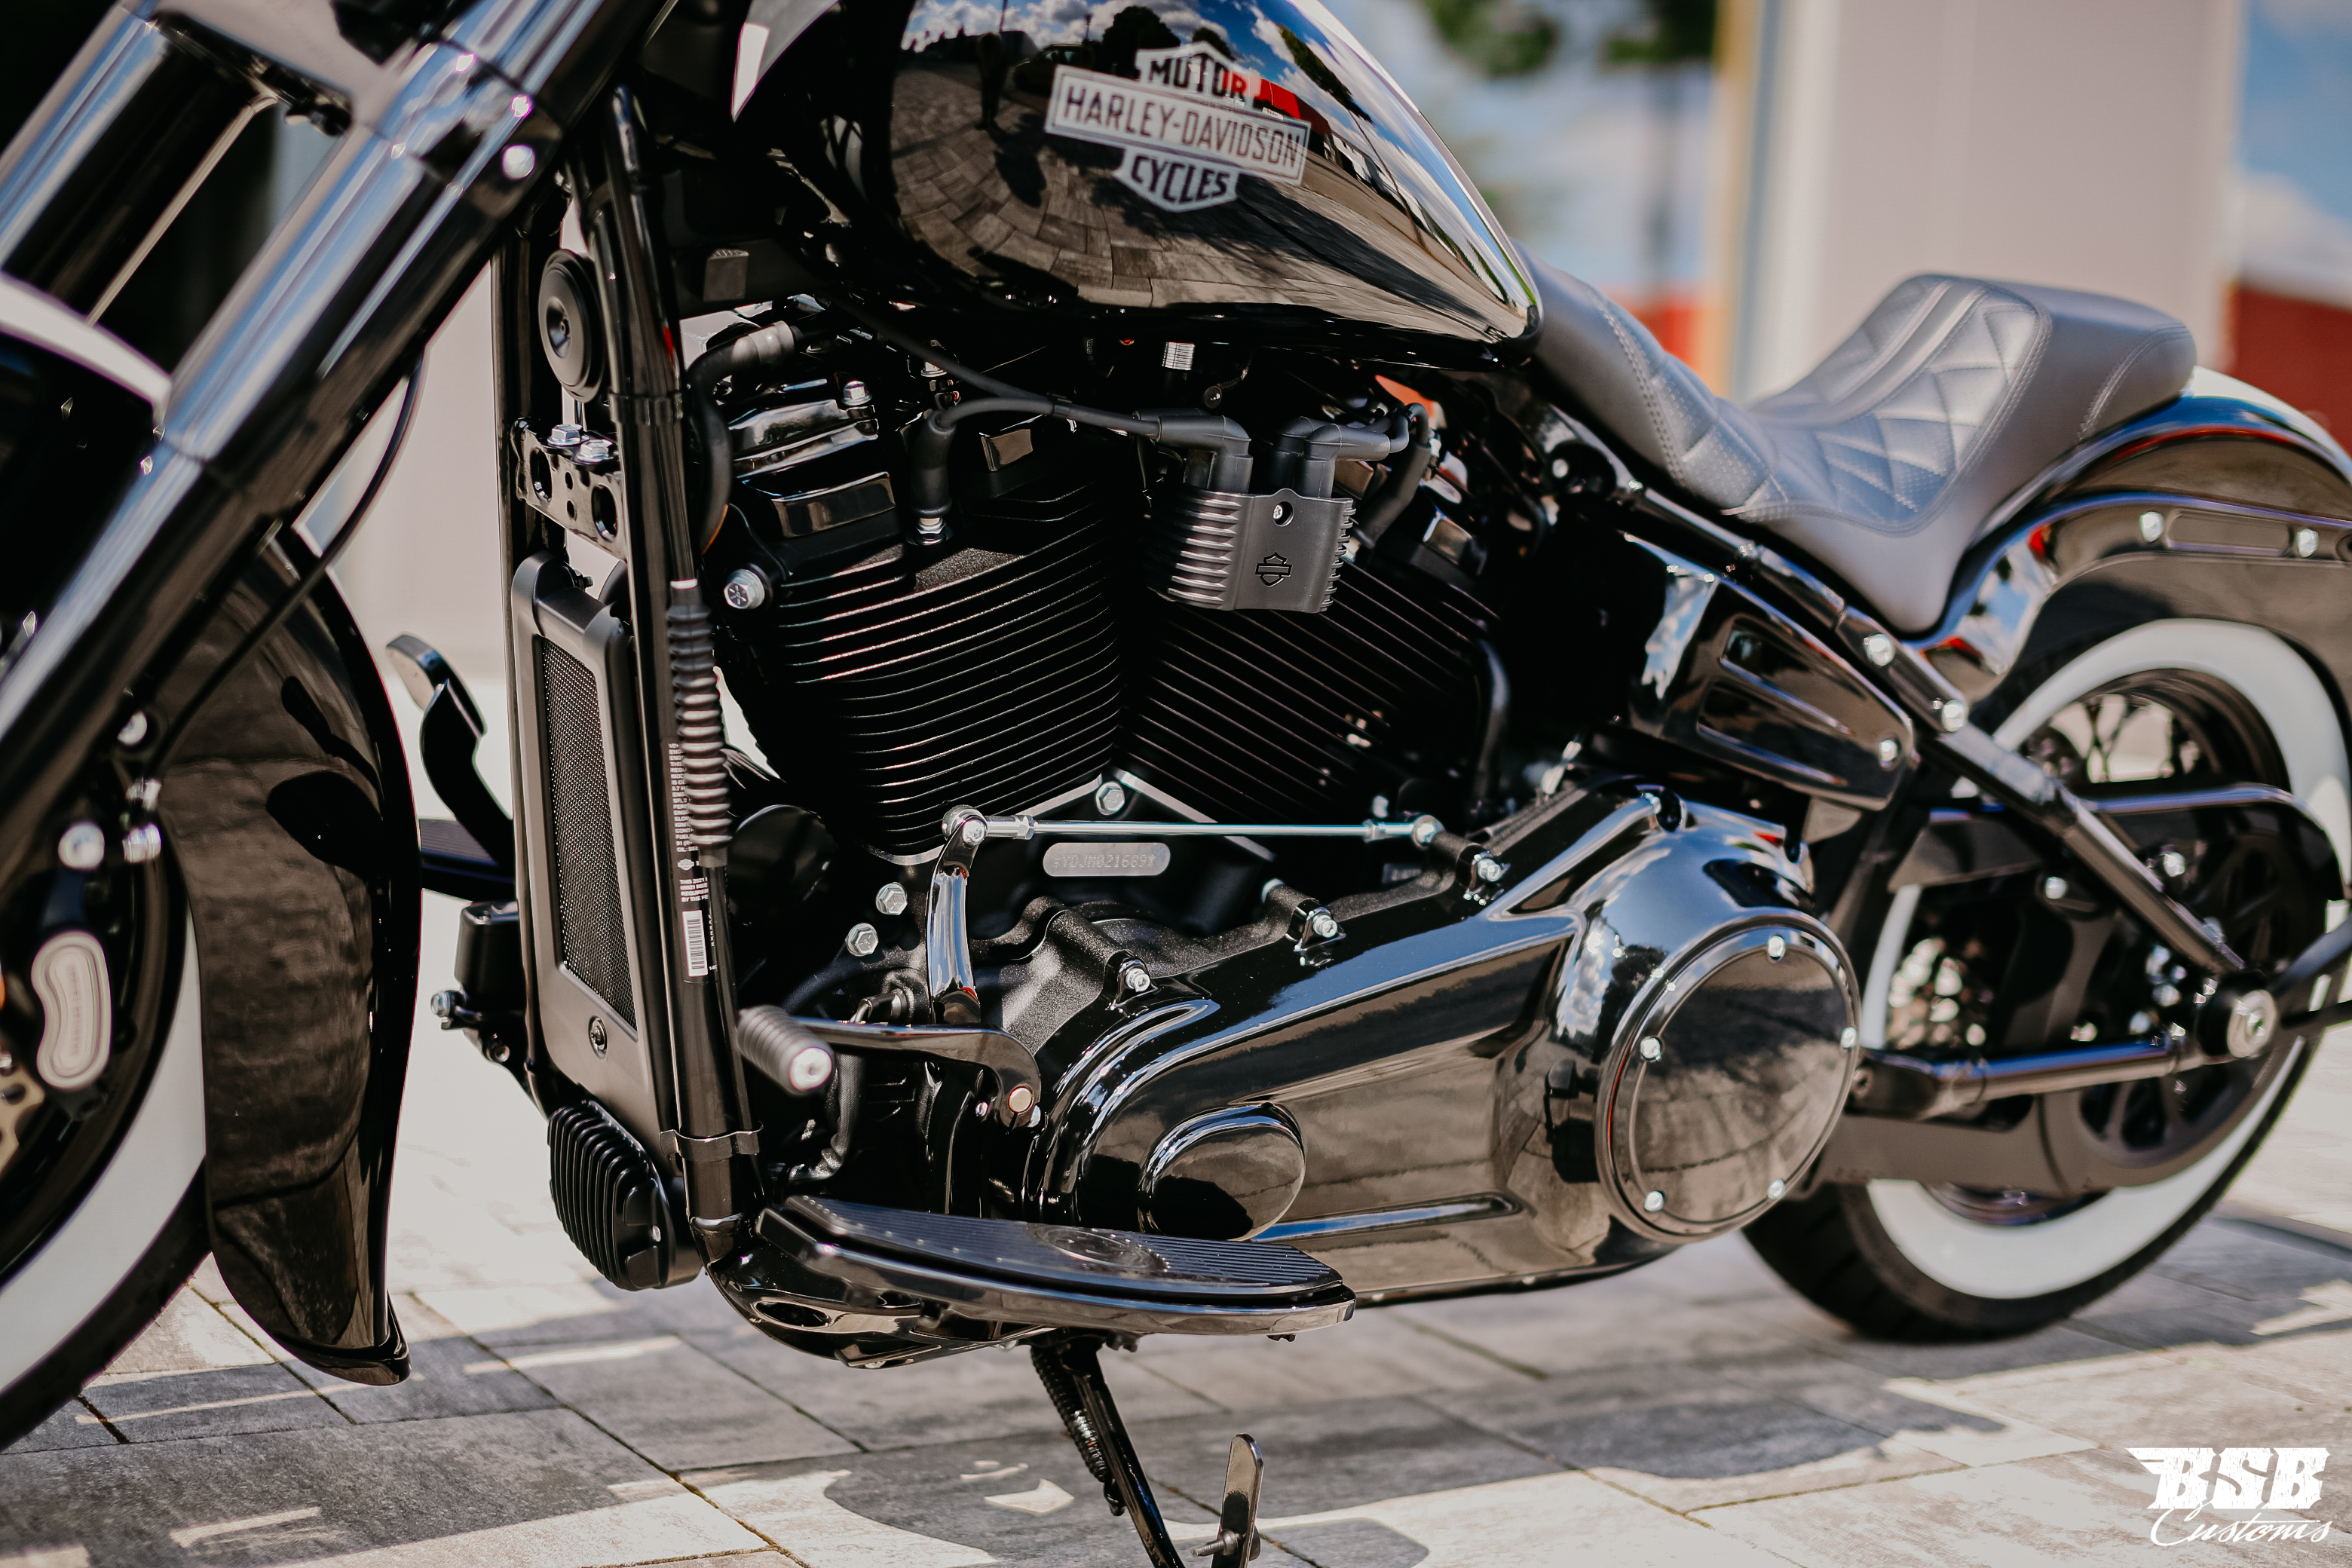 2021 Harley Davidson FLSL SLIM 107 CUI Chicano Umbau mit Jekill & Hyde Anlage ( bereits ab 300 EUR finanzieren*)